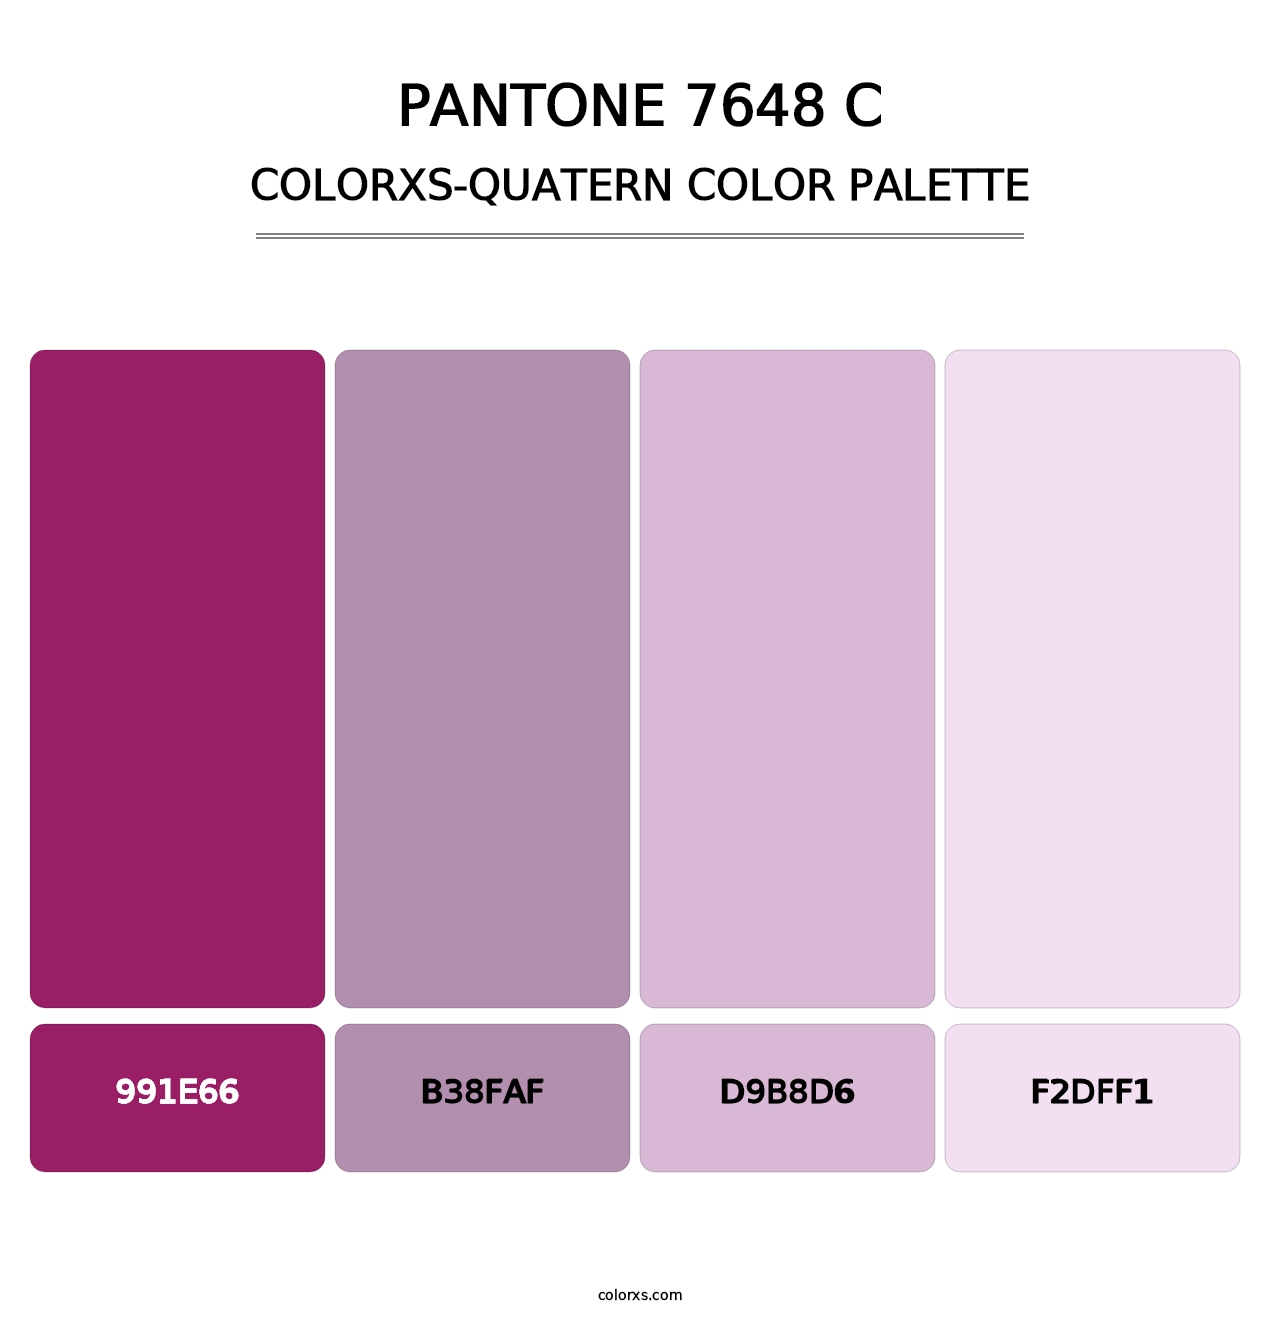 PANTONE 7648 C - Colorxs Quatern Palette